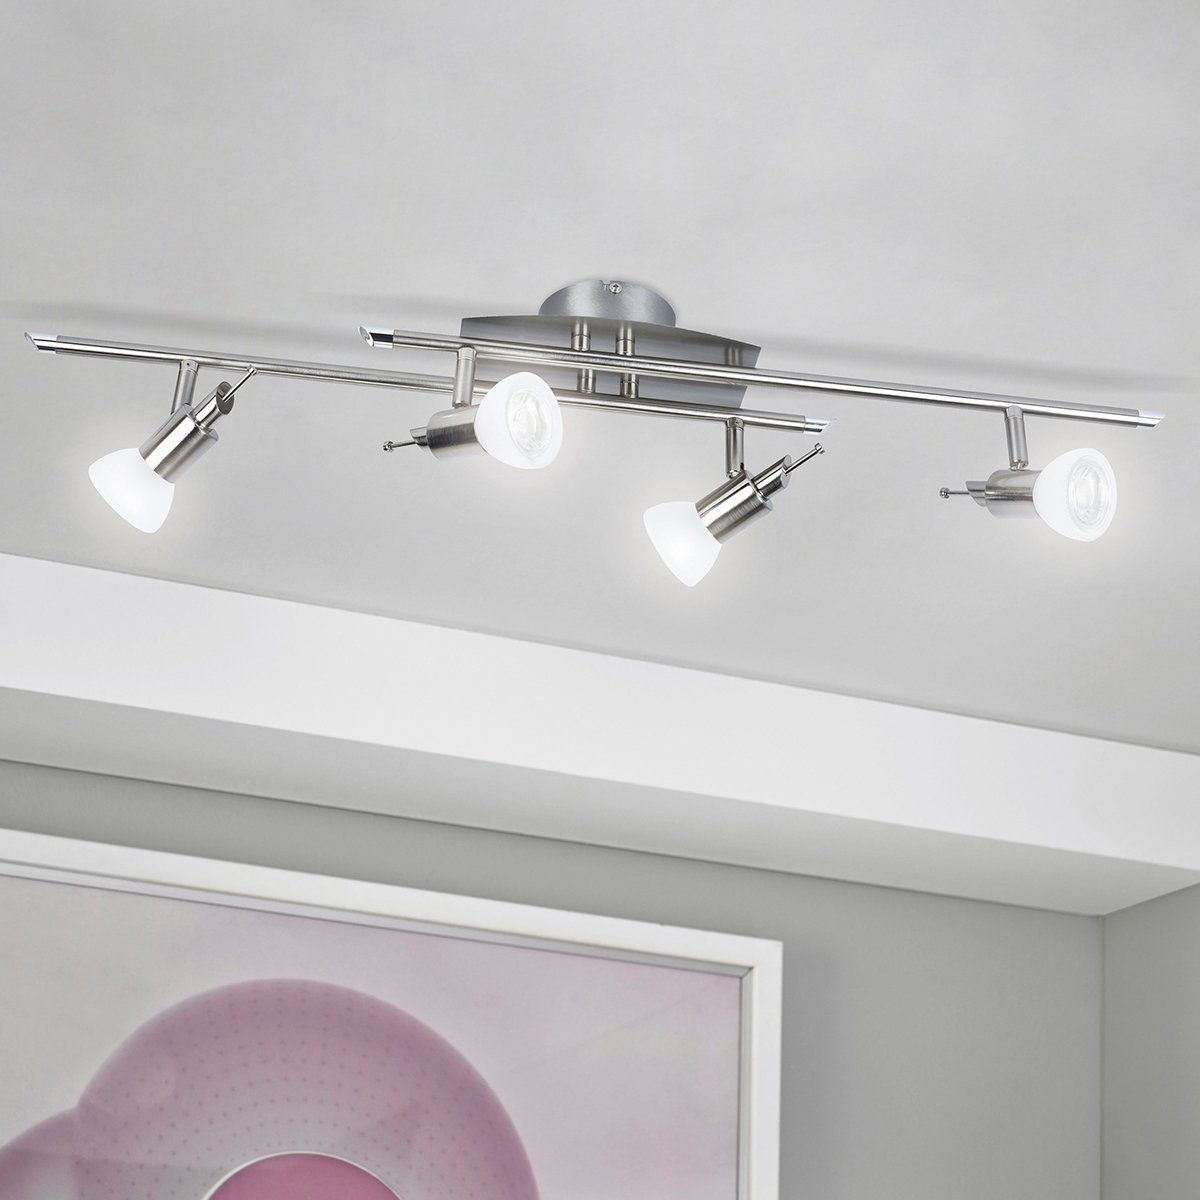 MeLiTec LED Deckenleuchte D81-1, LED, Design, Deckenlampe, Deckenstrahler, Wohnzimmer, Decken, Beleuchtung, Lampe